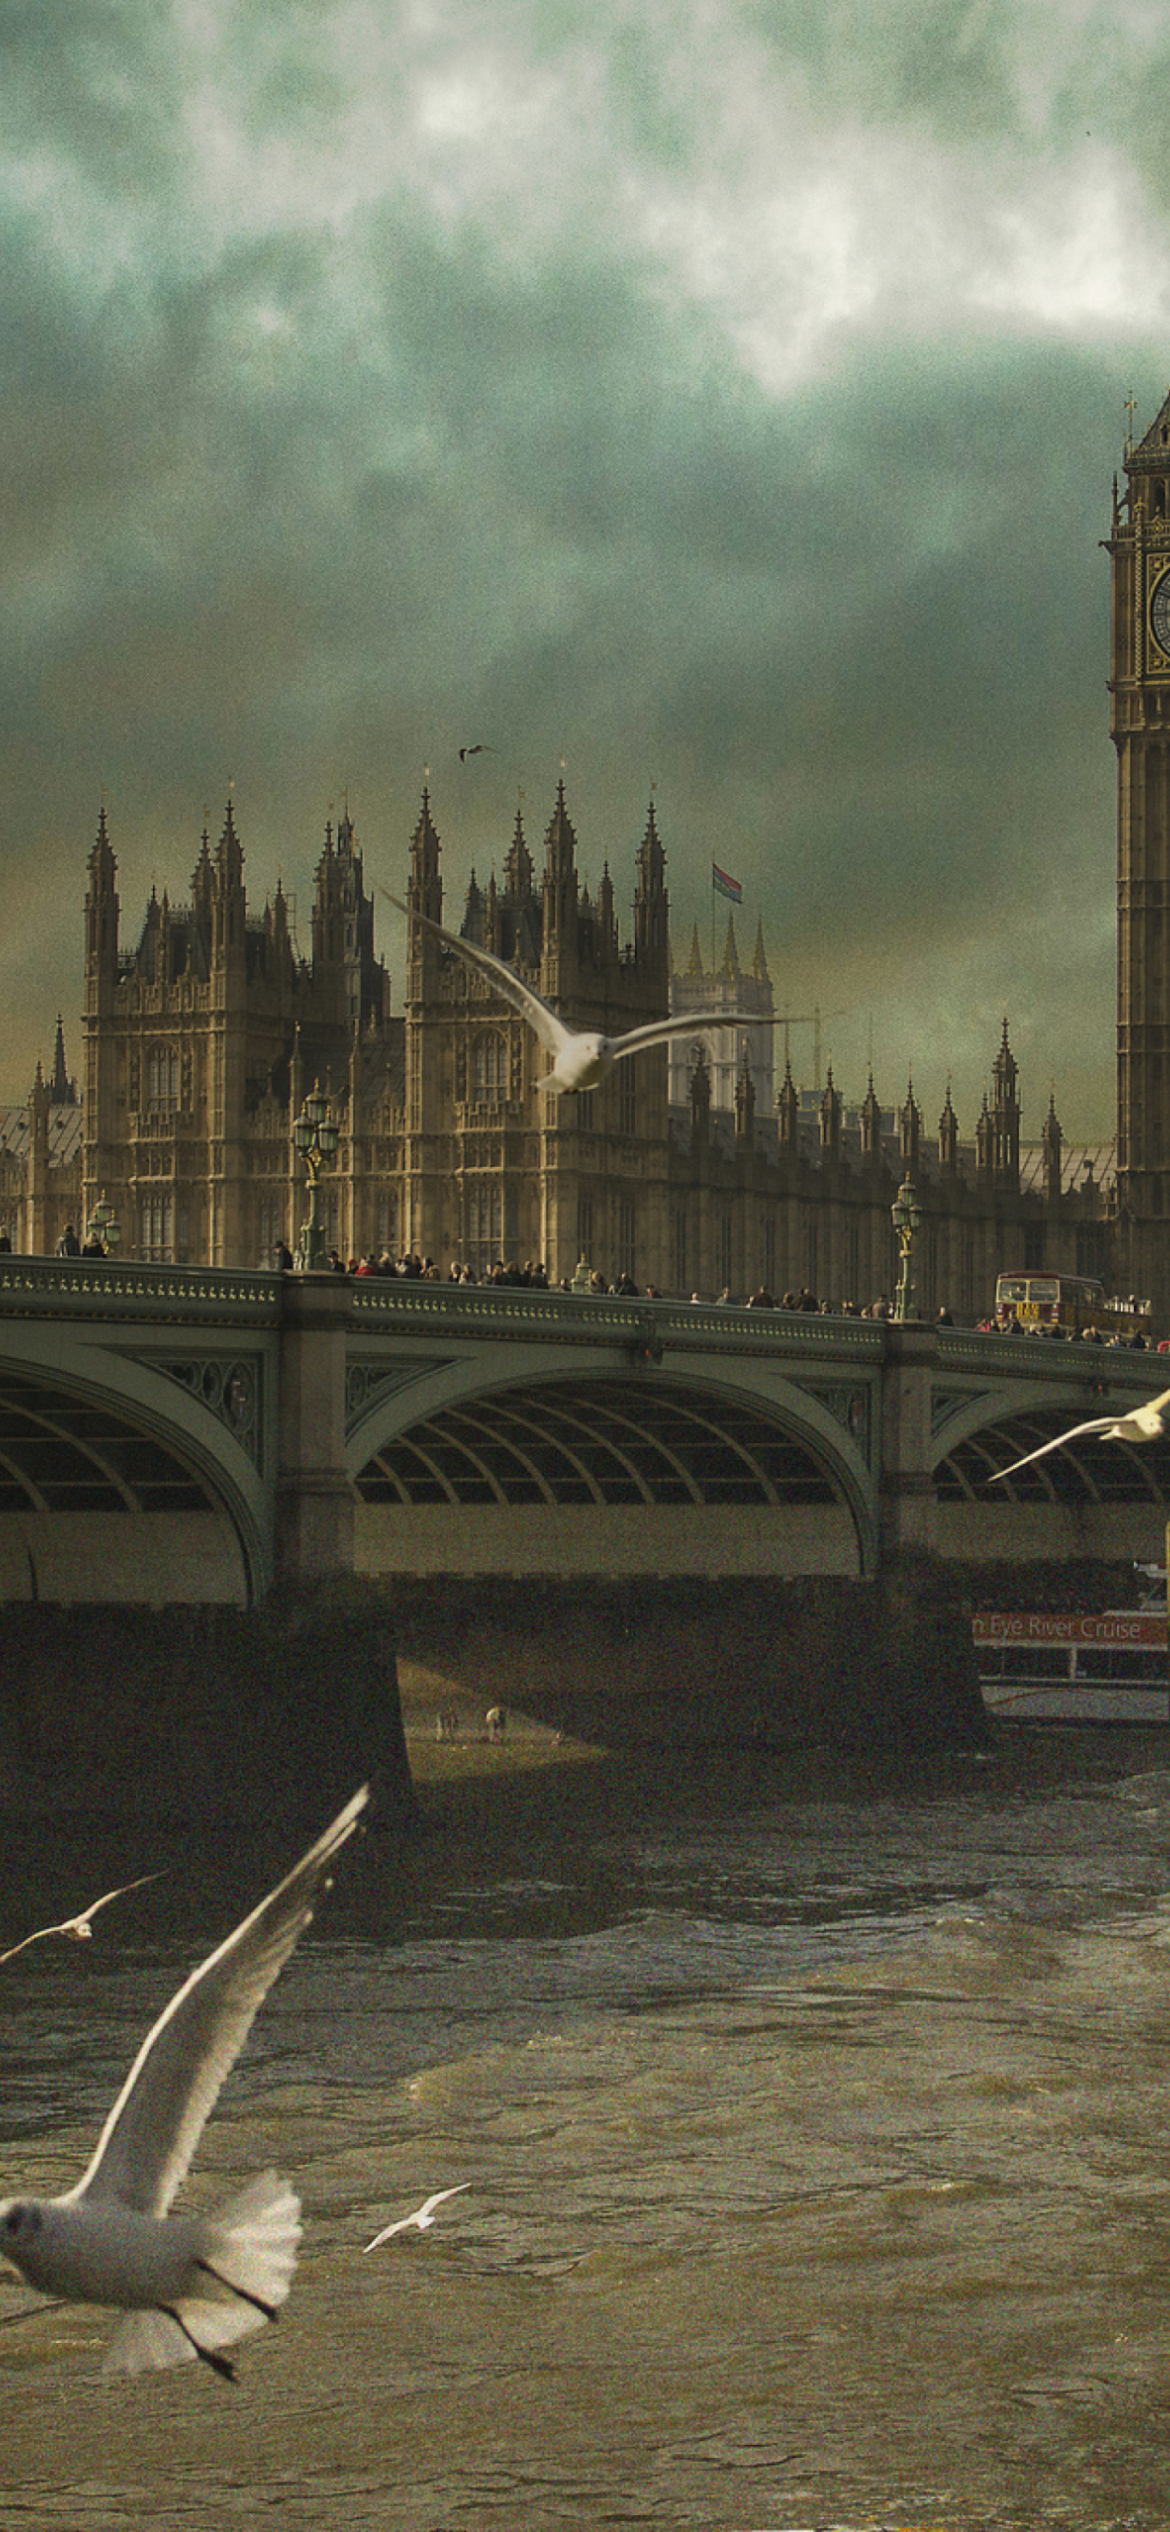 Sfondi Dramatic Big Ben And Seagulls In London England 1170x2532